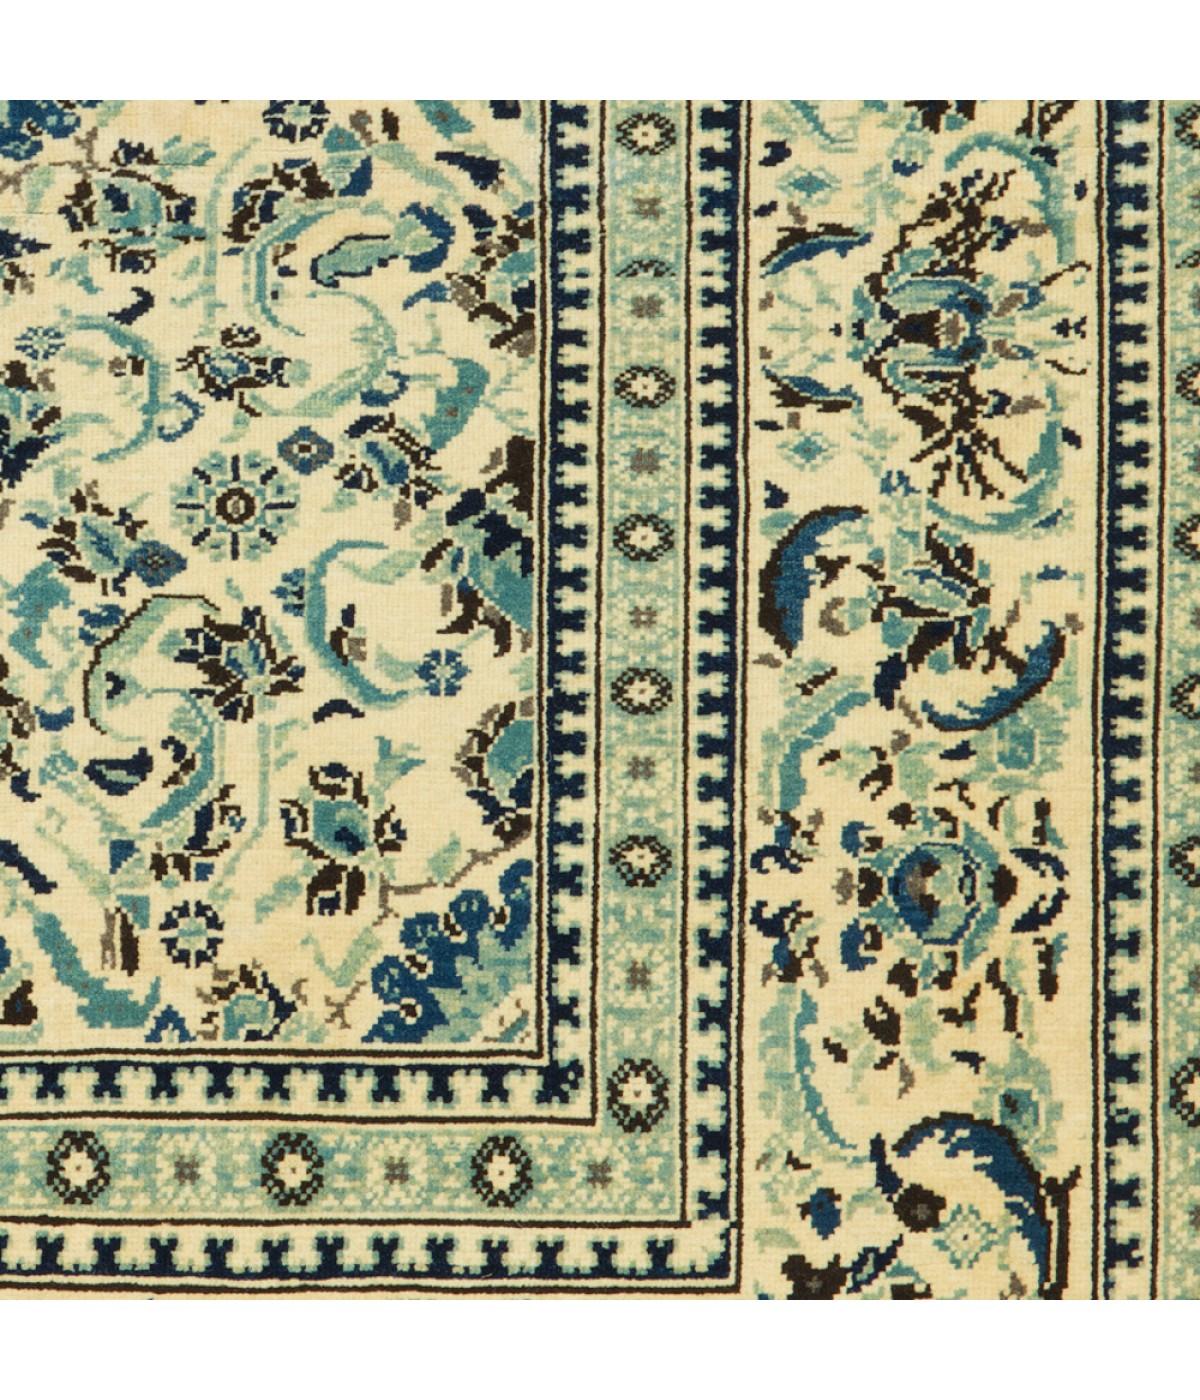 Die Teppiche der türkischen Hofmanufaktur wurden in den ägyptischen Werkstätten gewebt, die im 16. Jahrhundert vom Osmanischen Reich gegründet wurden. Diese Teppiche wurden in Ägypten geknüpft, und zwar in Anlehnung an die Papierkarikaturen, die